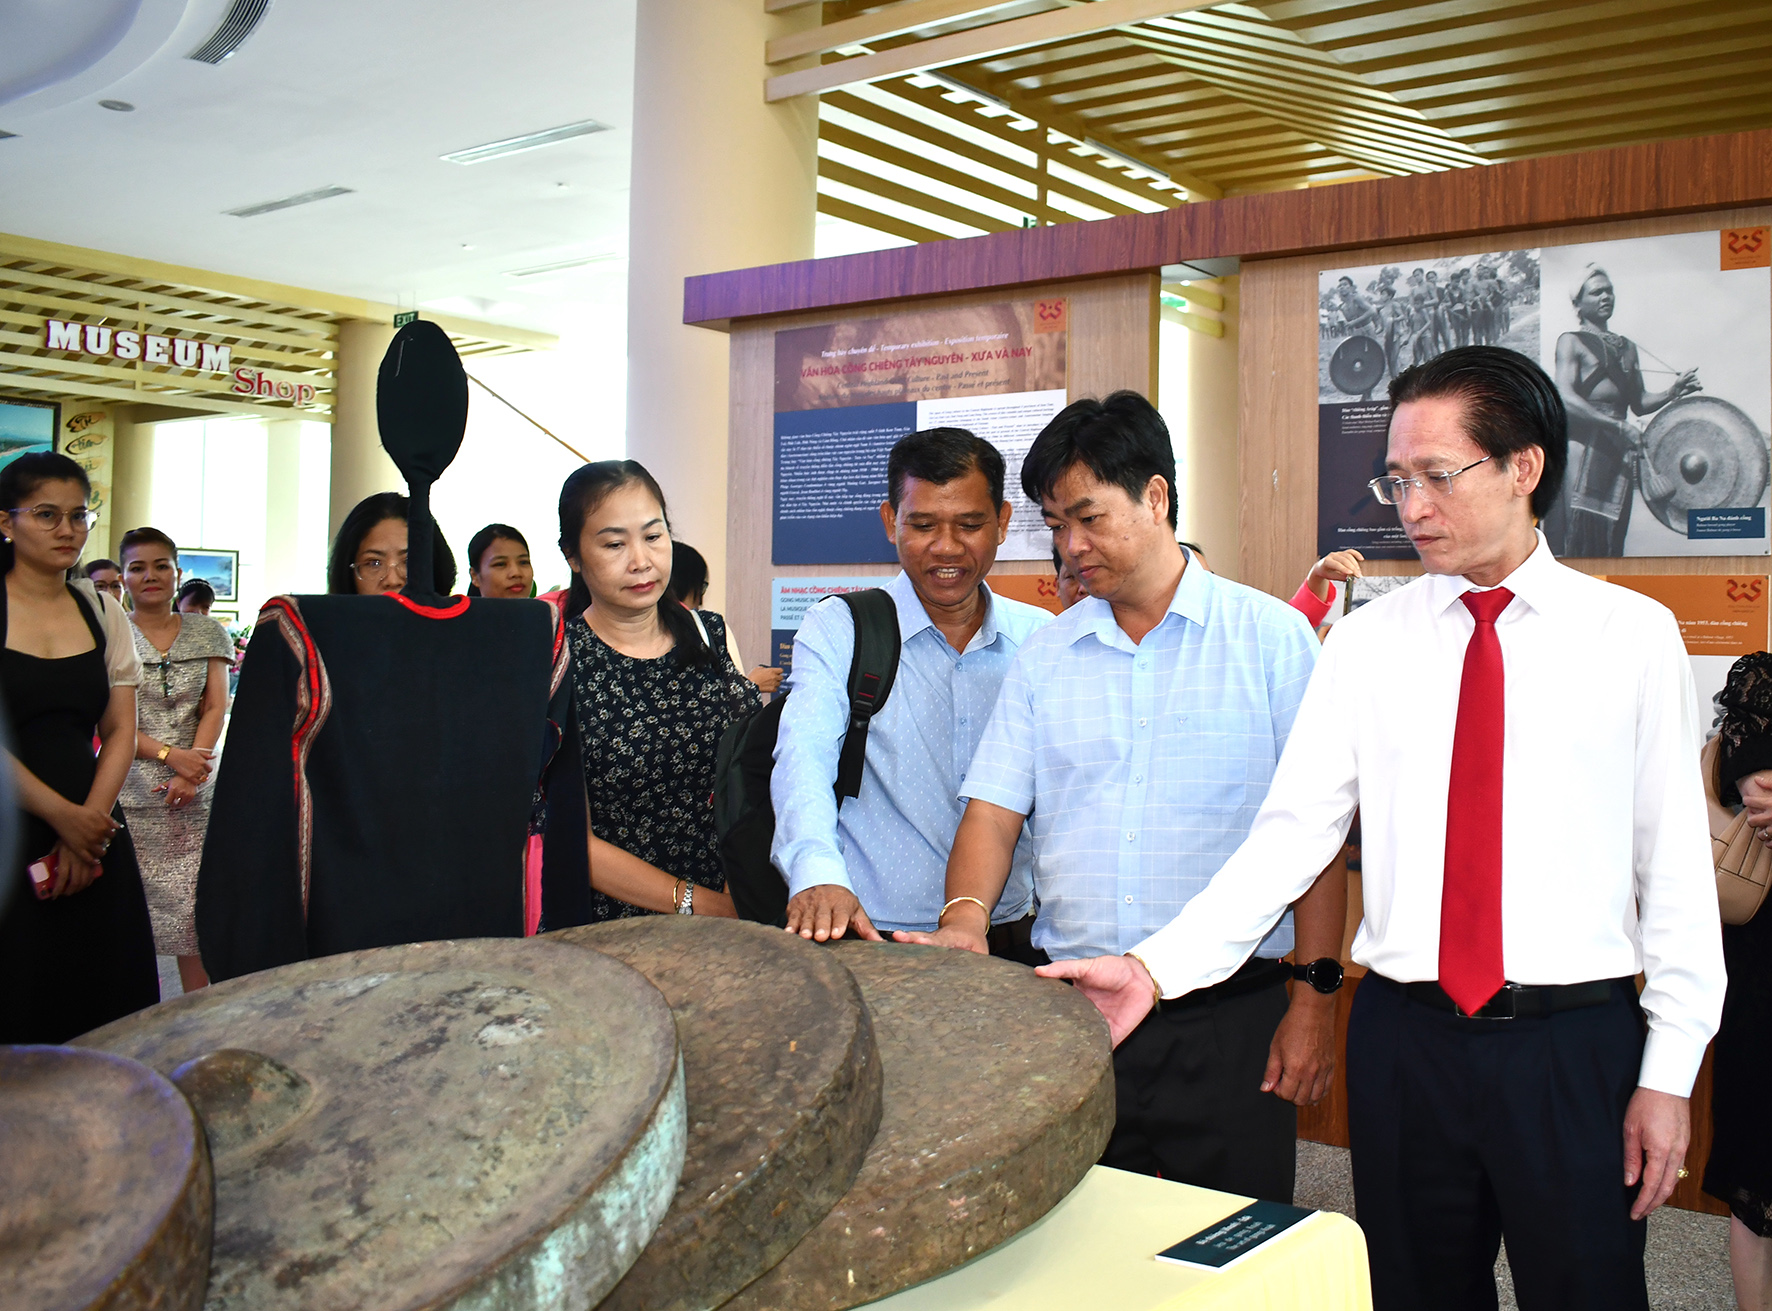 Các đại biểu tham quan hiện vật tại trưng bày văn hóa cồng chiêng Tây Nguyên ở Bảo tàng tỉnh Bà Rịa - Vũng Tàu.